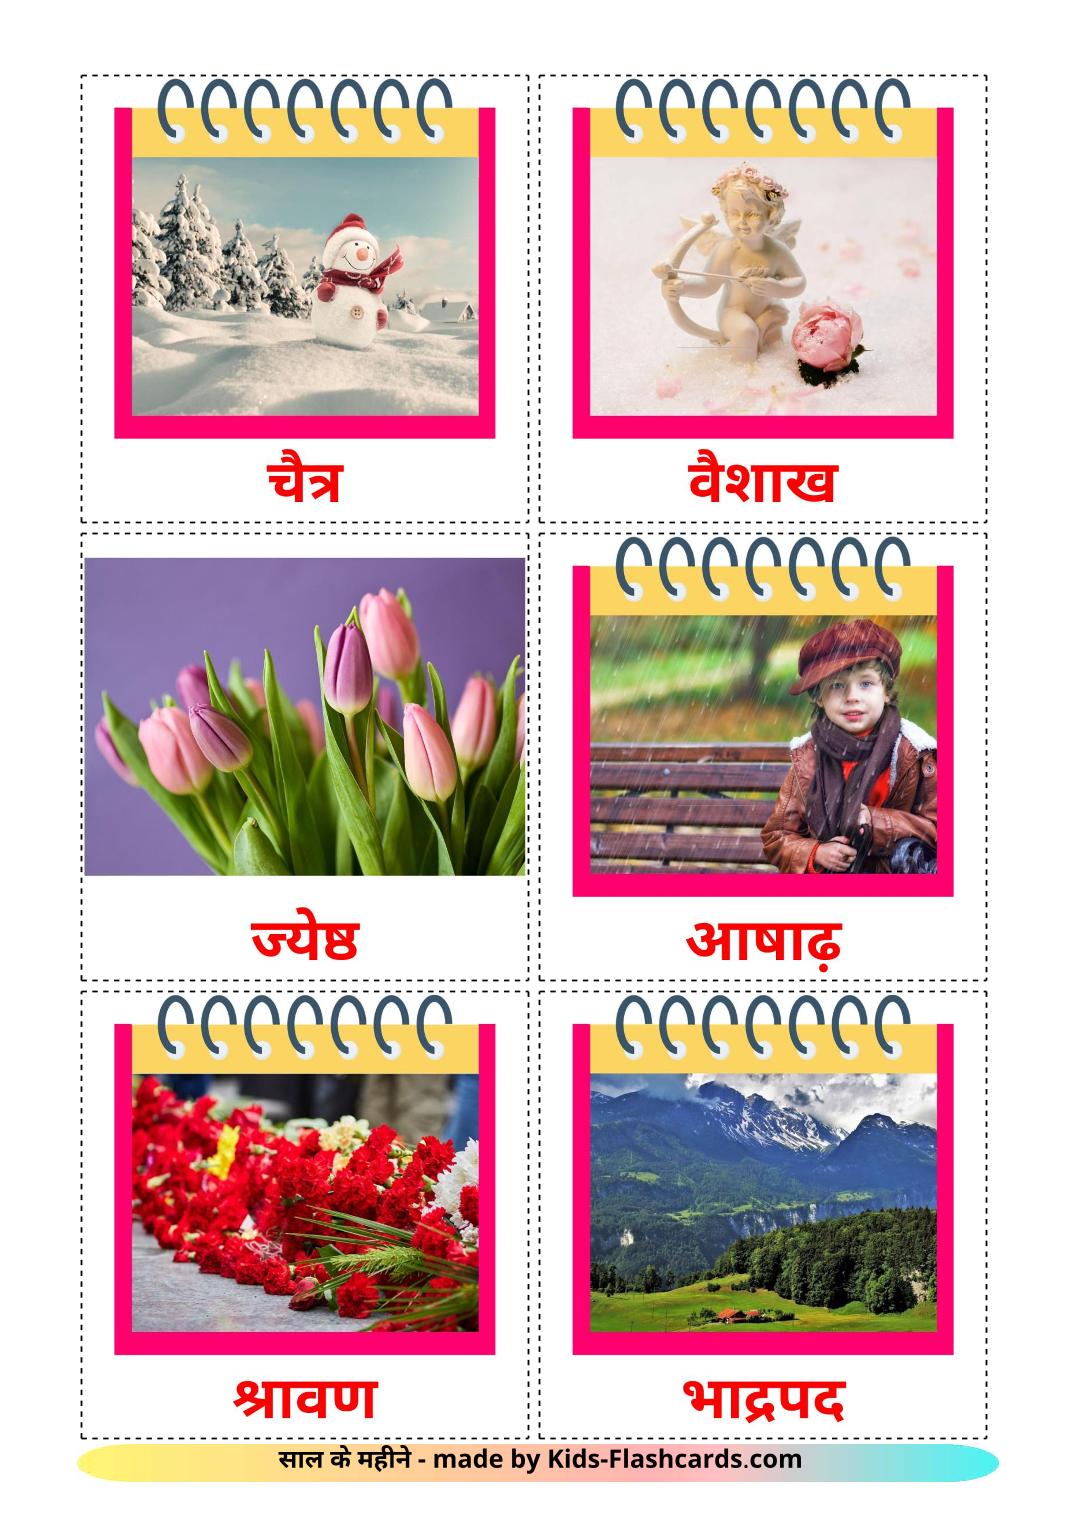 Meses del año - 12 fichas de hindi para imprimir gratis 